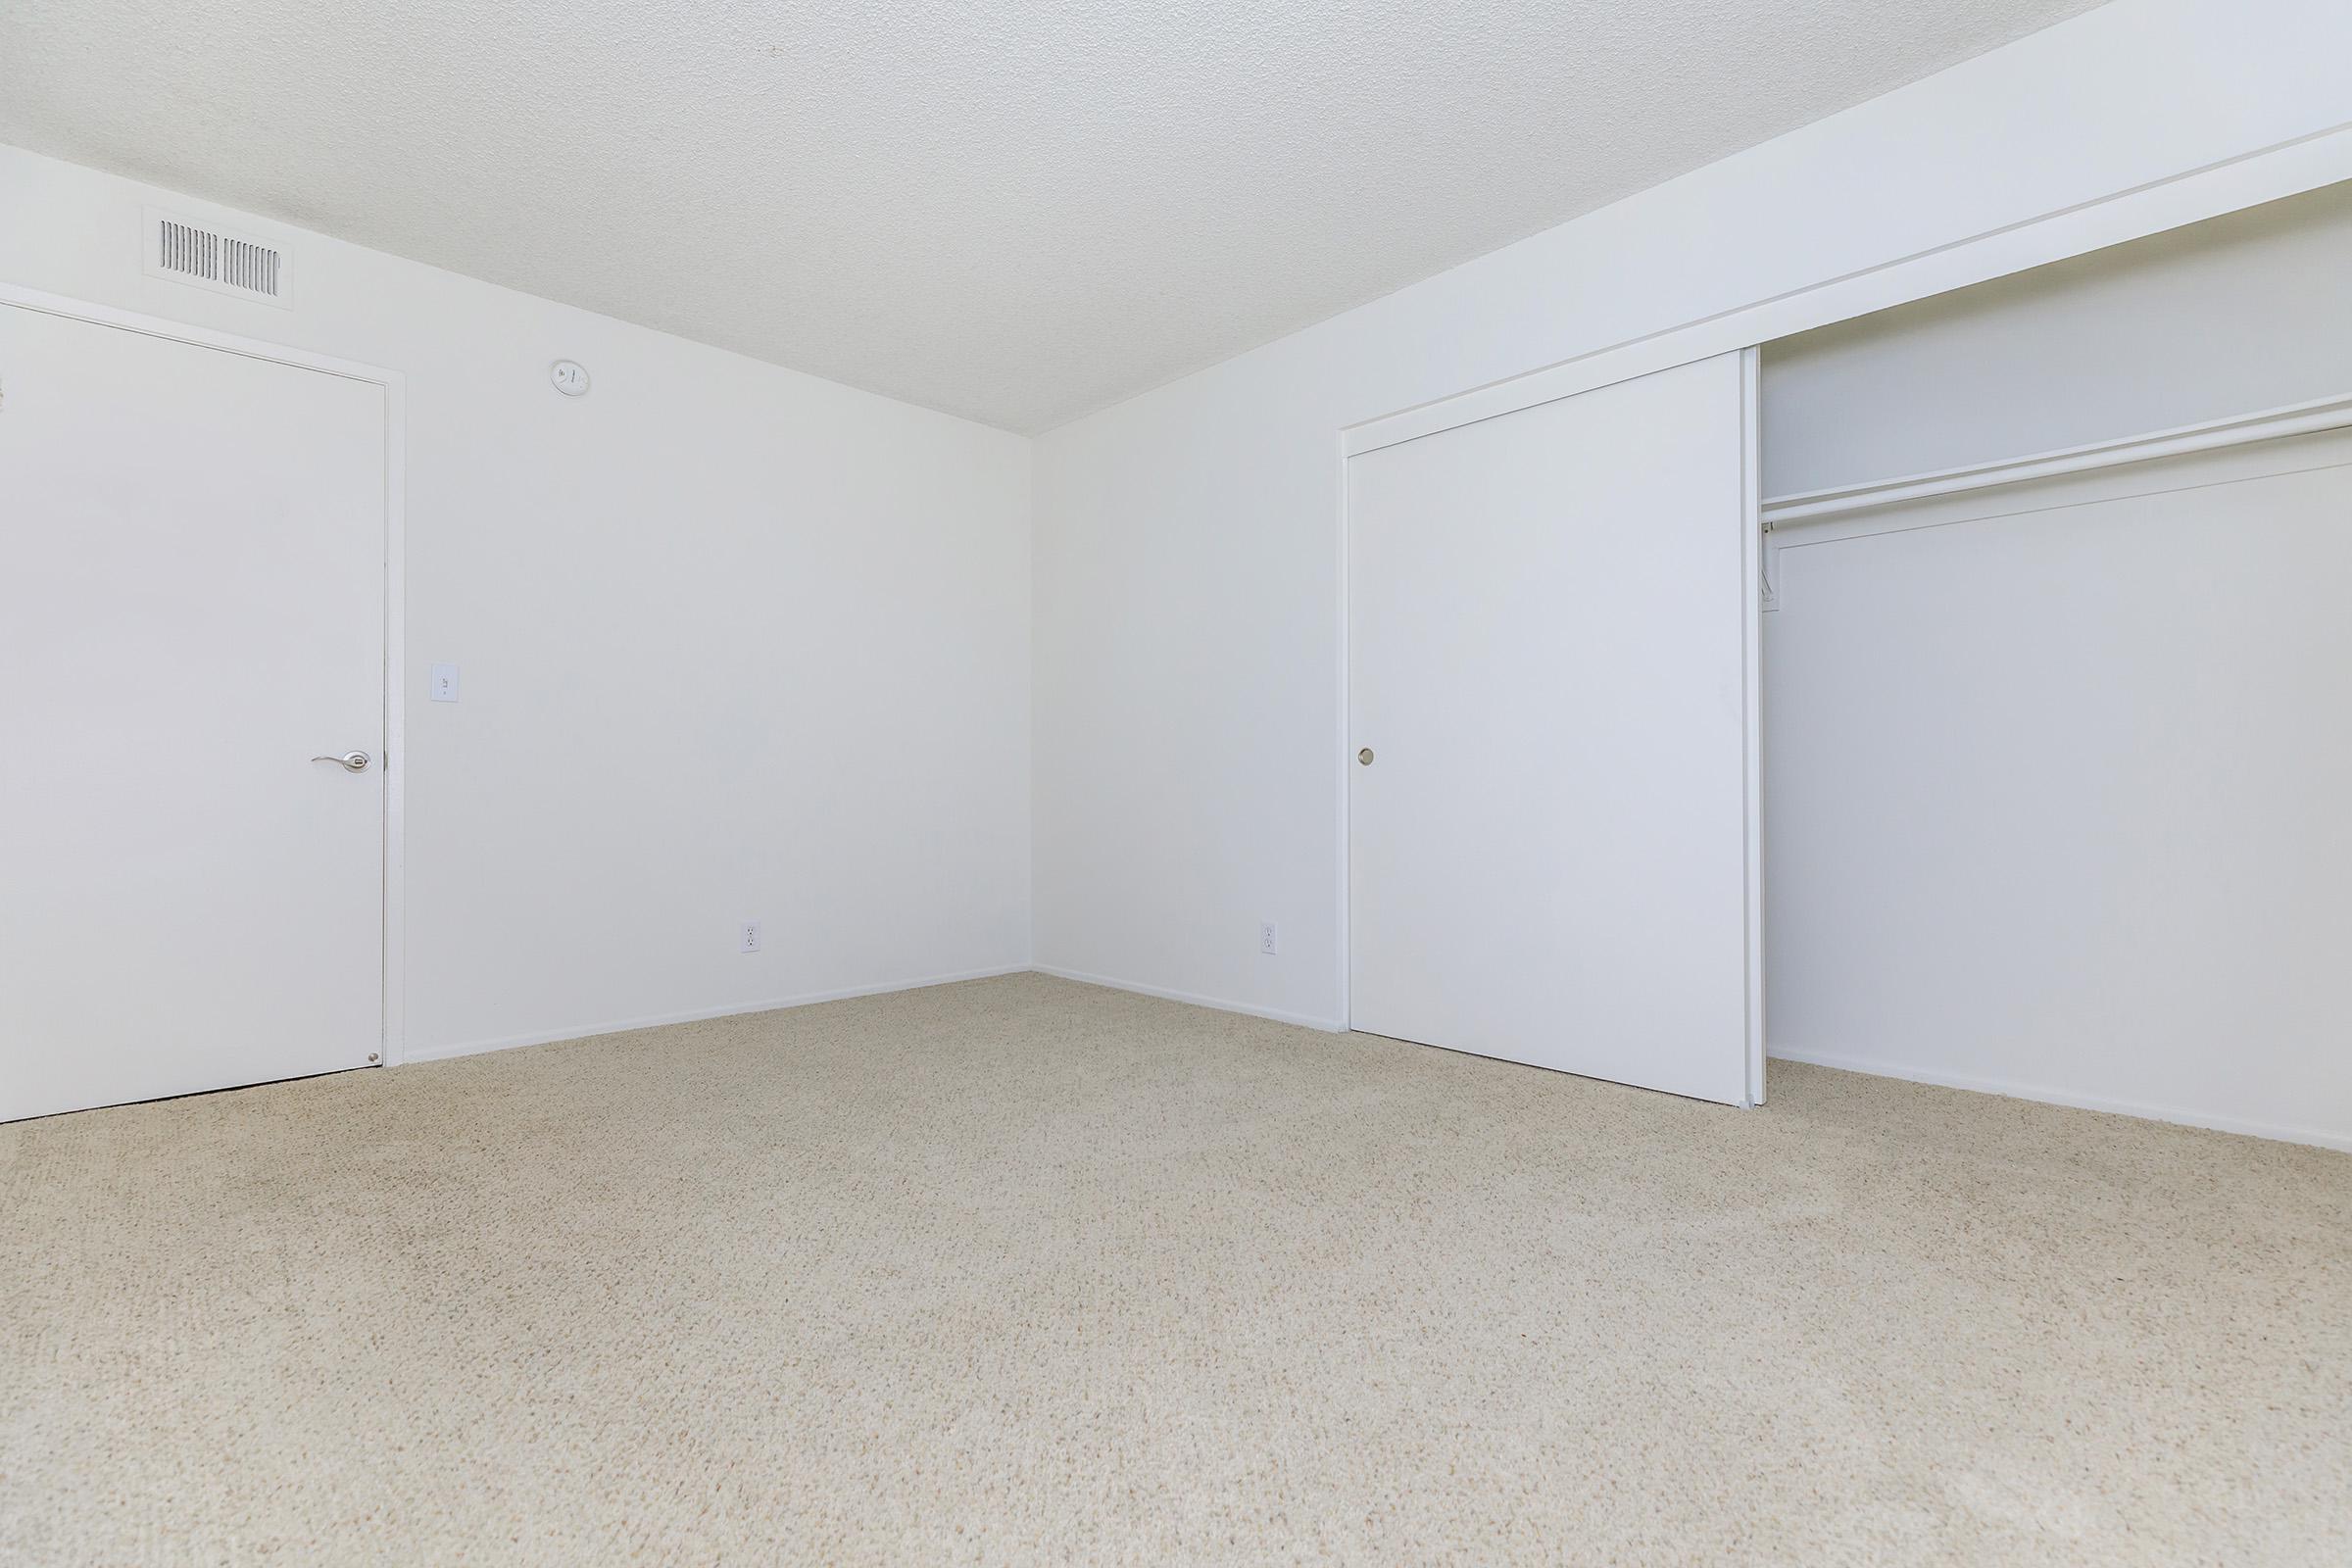 Unfurnished bedroom with open sliding closet door